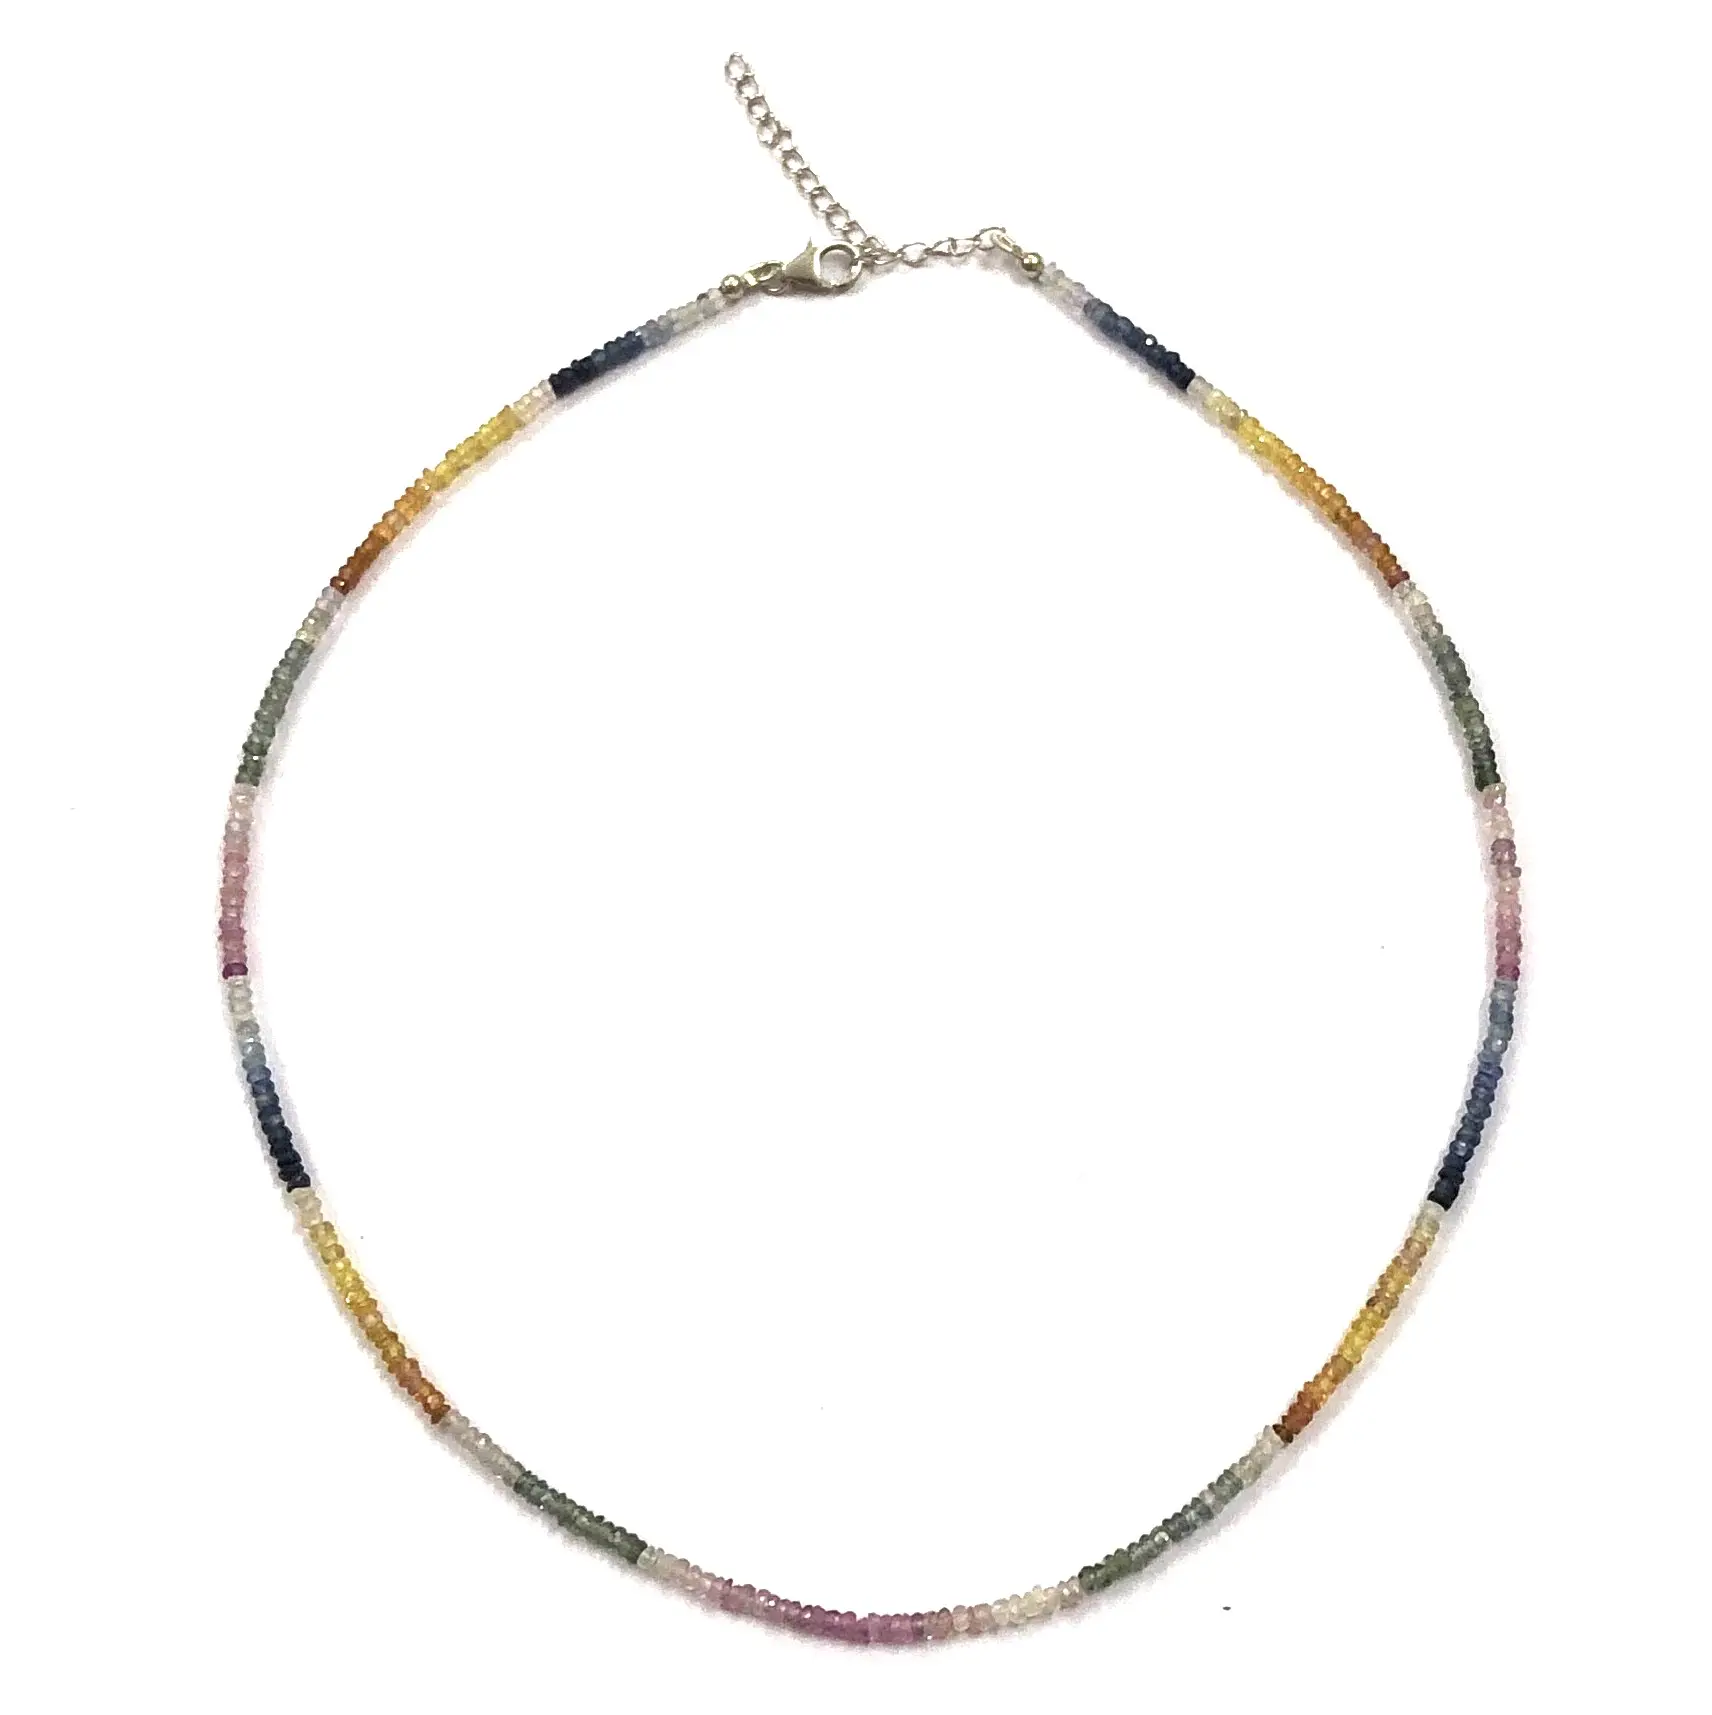 Edelsteine mit mehrfacher Saphir-Werte Perlen-Halsketten Schmuck Großhandelspreis trendig Party-Bekleidung Design kaufen Sie jetzt Online-Shop